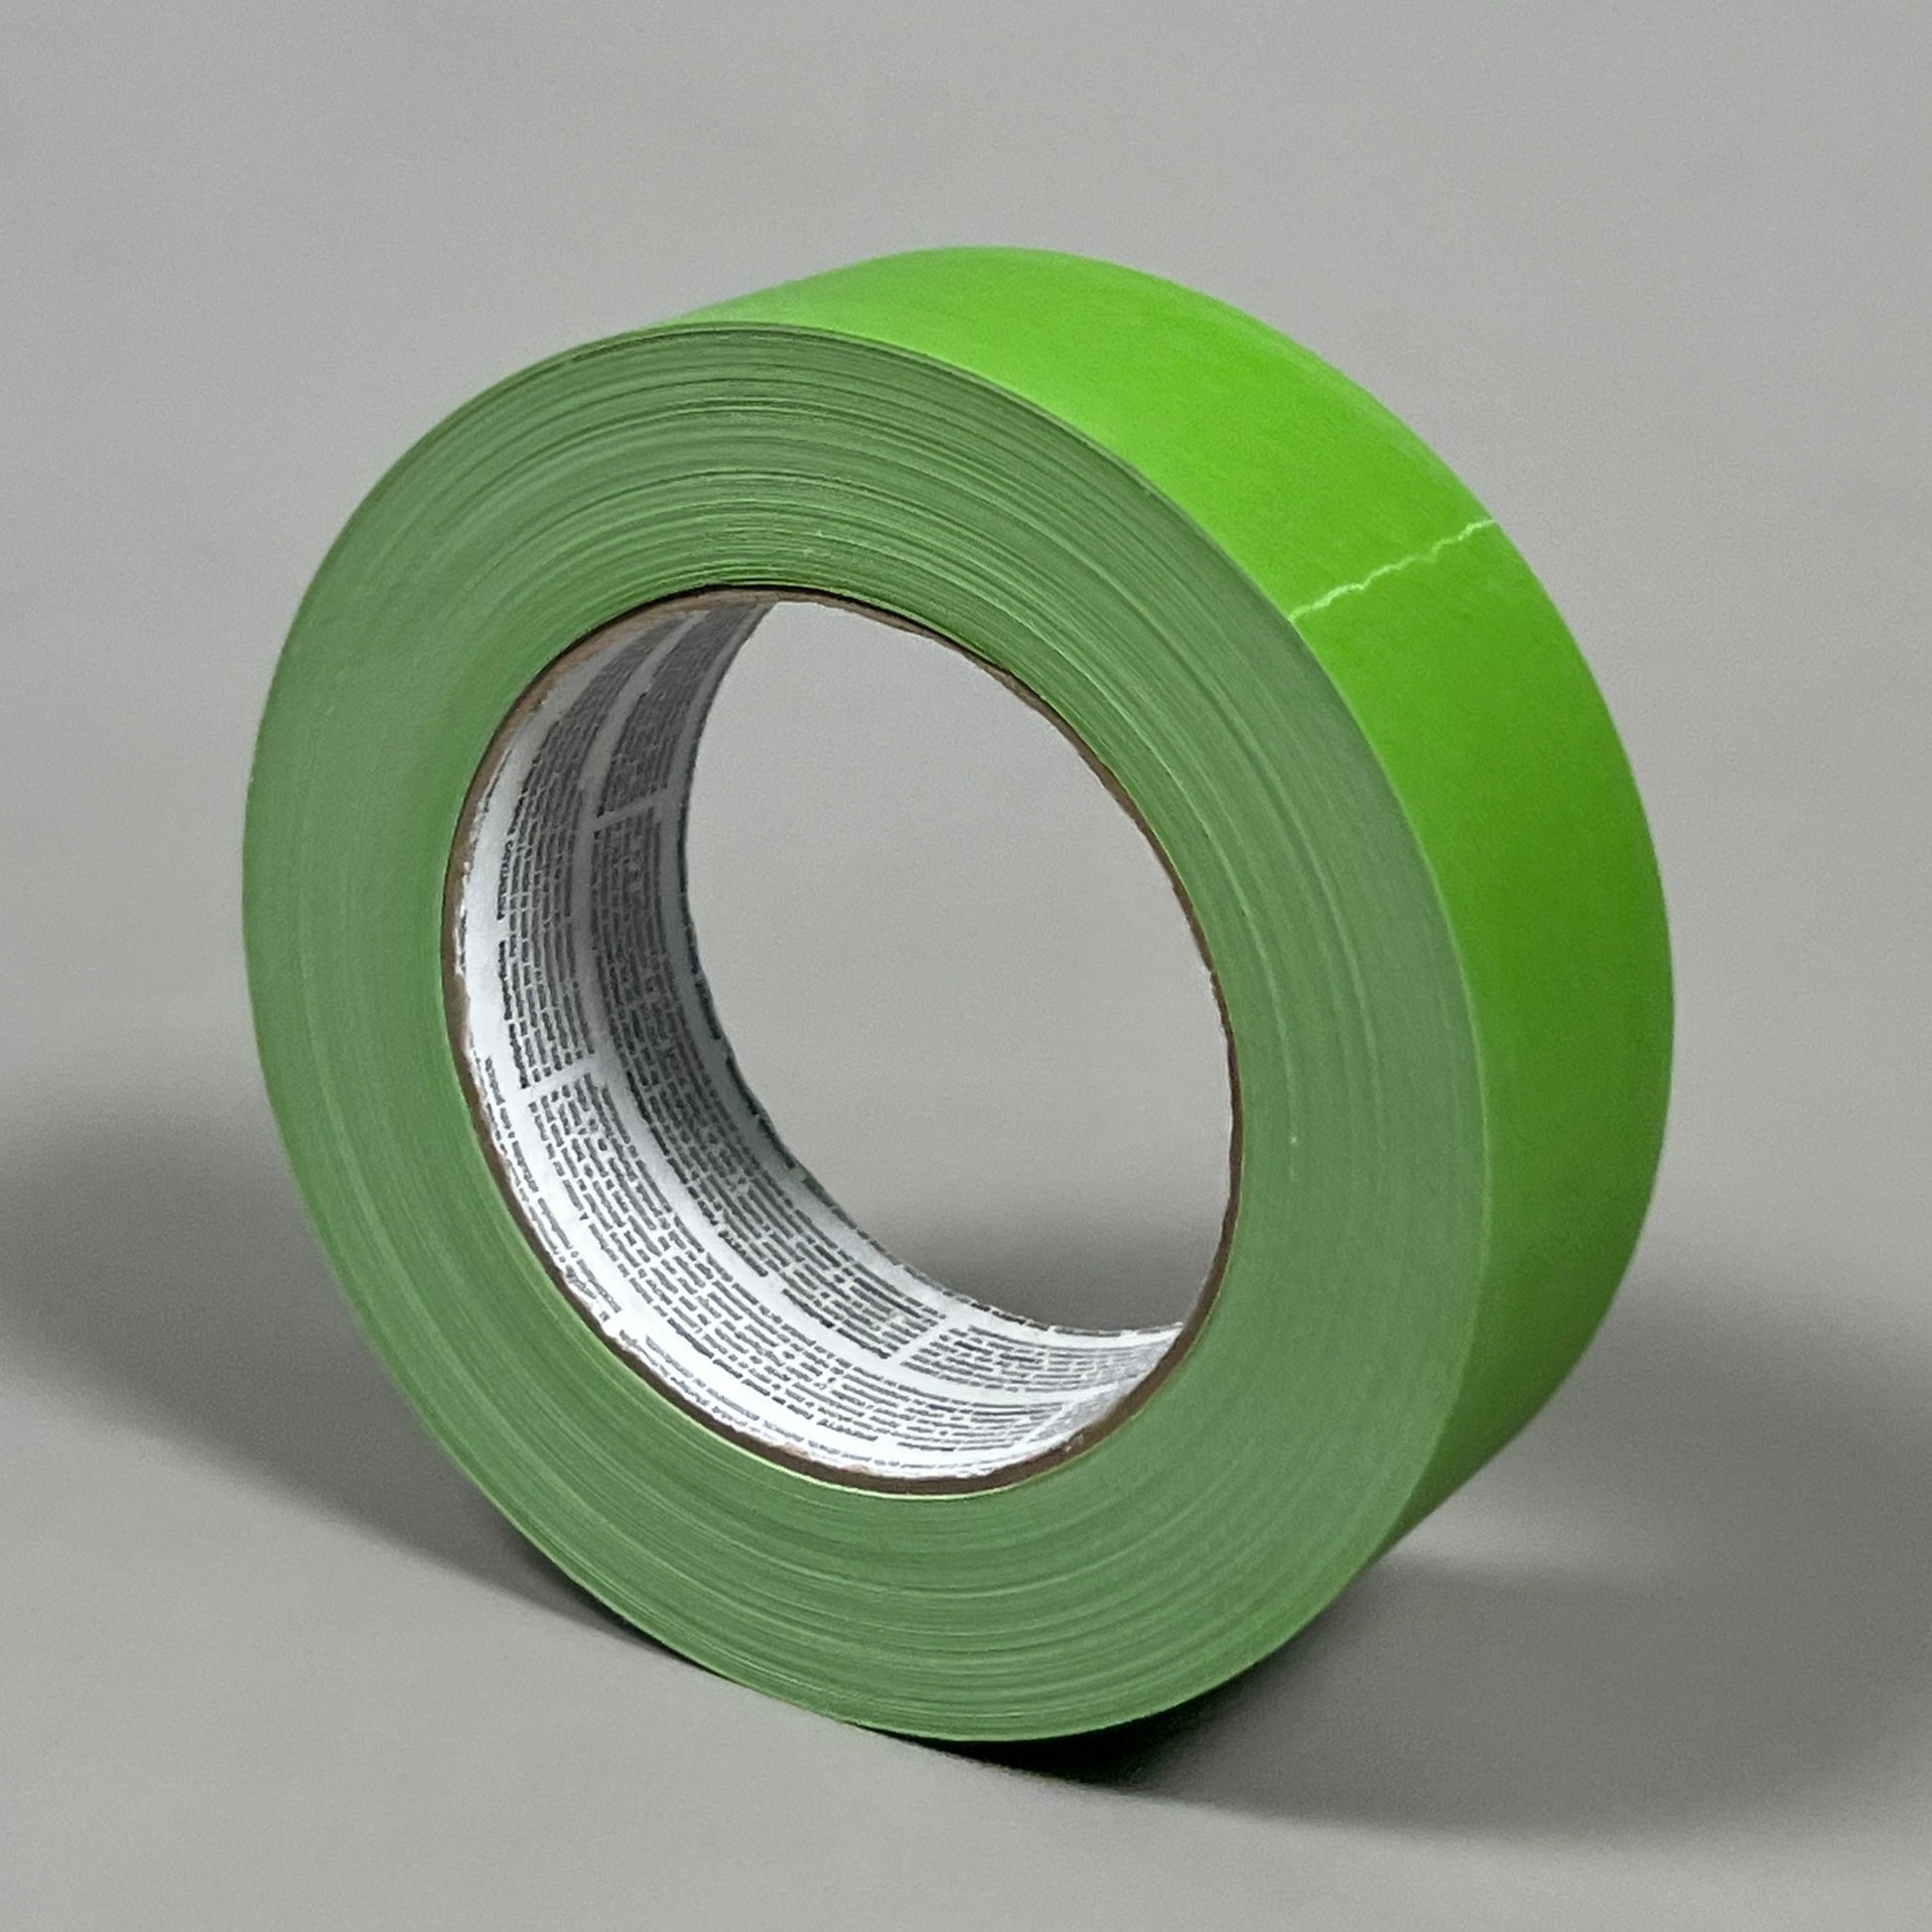 Shurtape Green Masking Tape